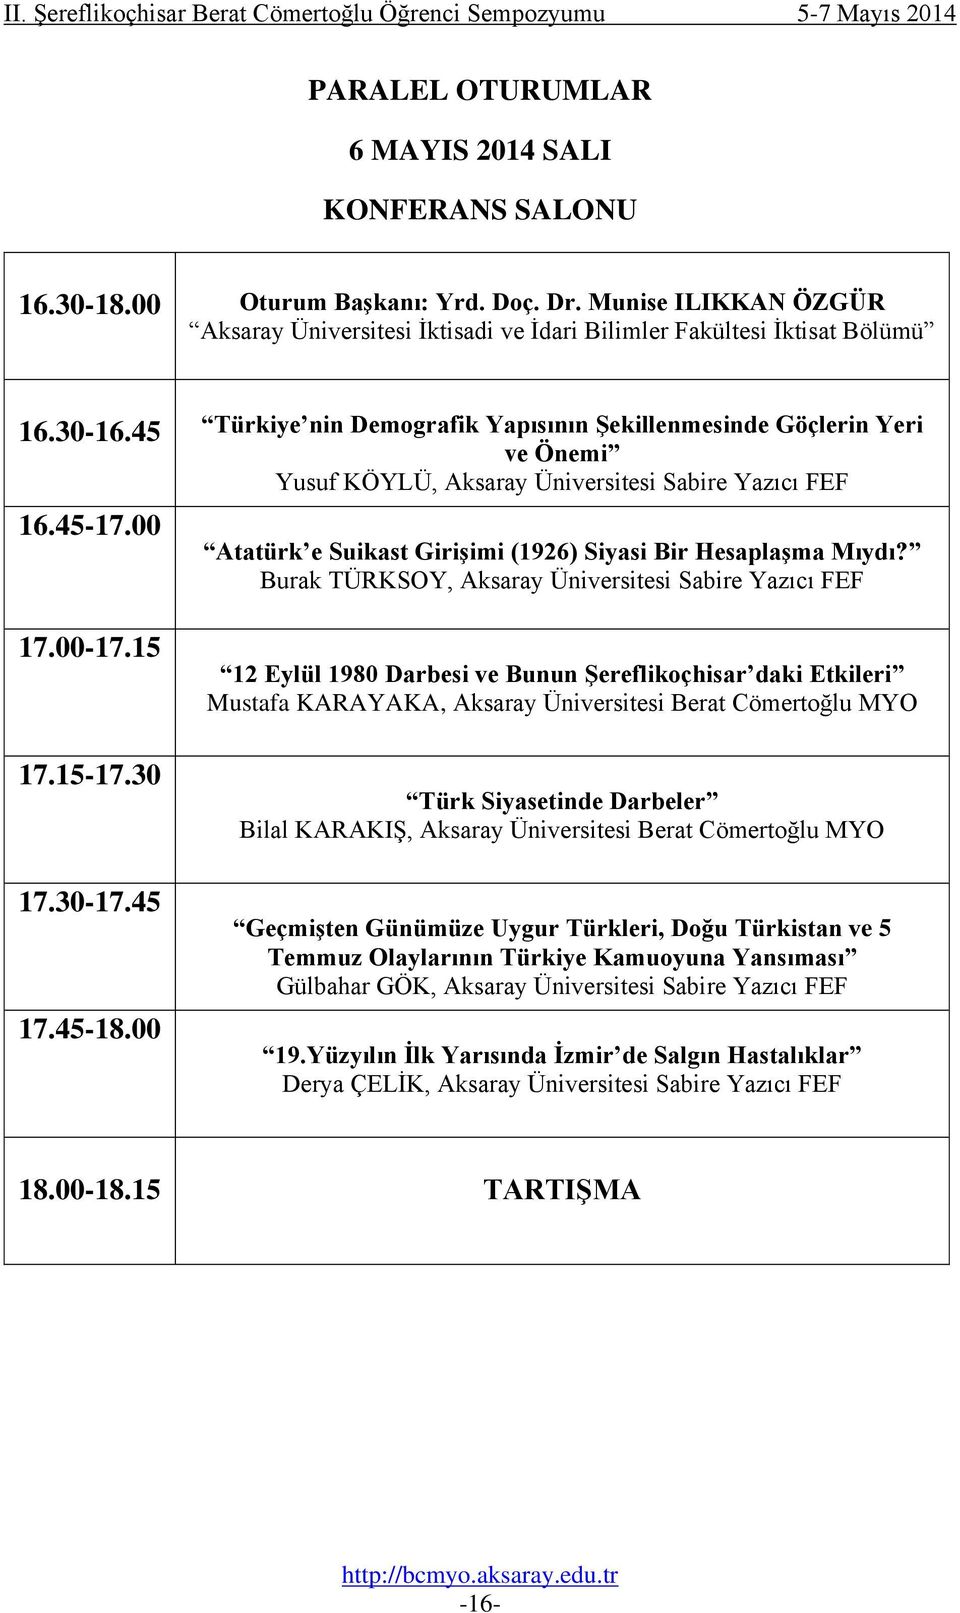 Burak TÜRKSOY, Sabire Yazıcı FEF 17.00-17.15 17.15-17.30 17.30-17.45 17.45-18.